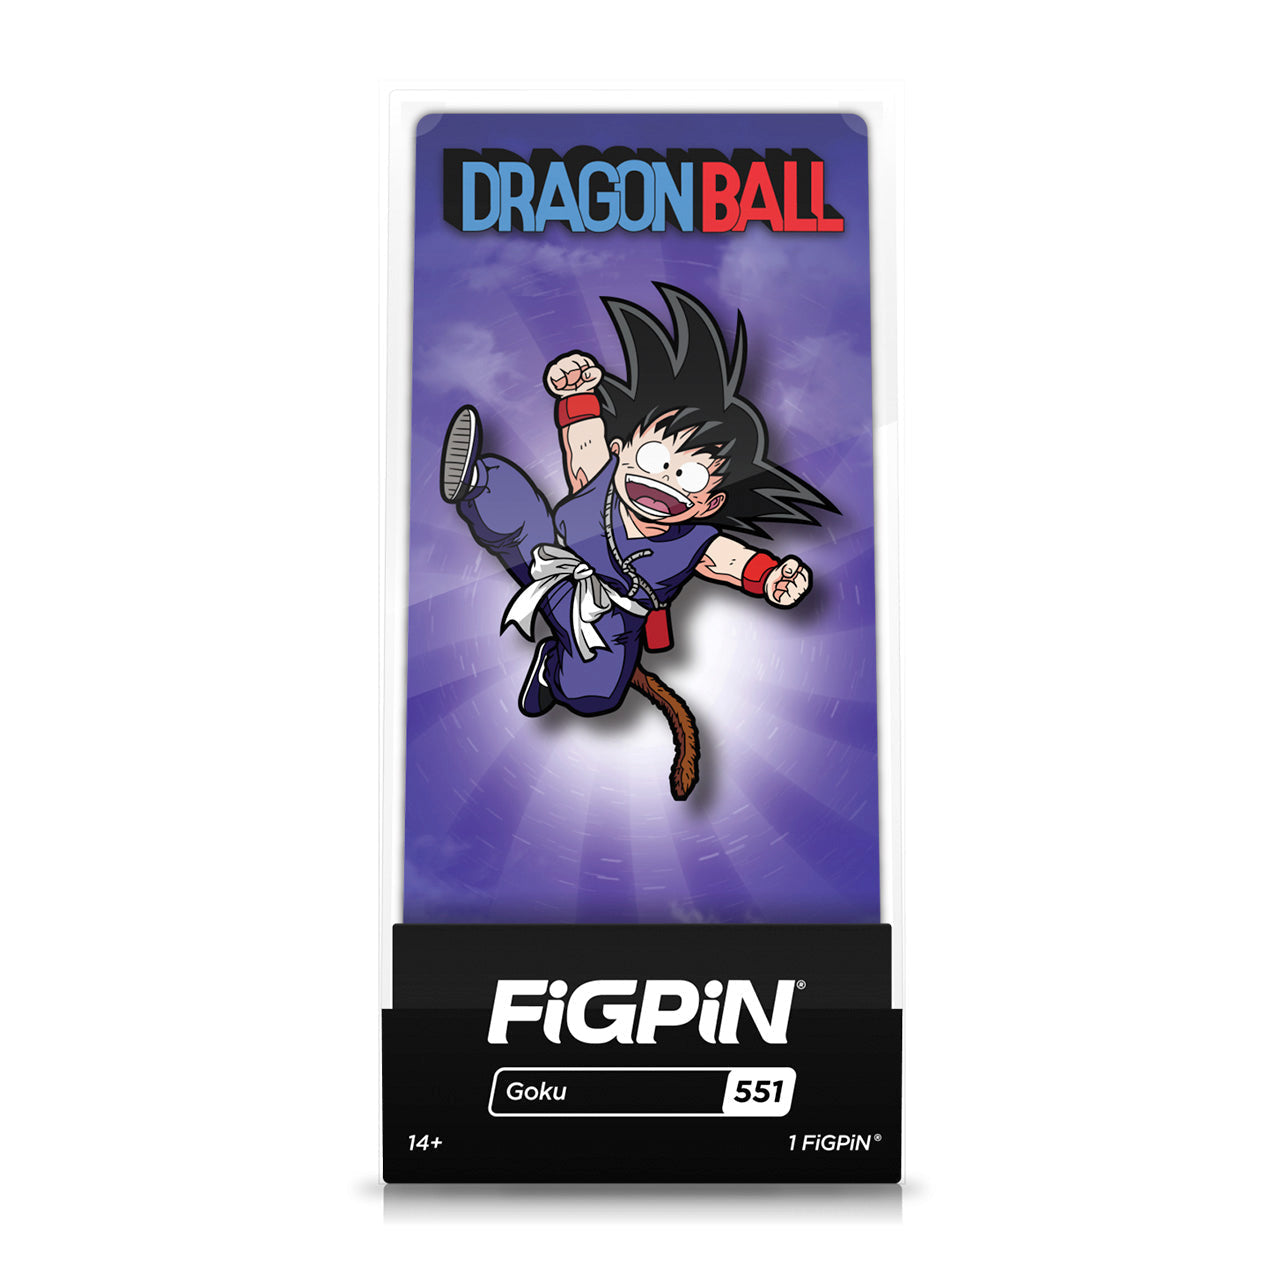 Dragon Ball - Goku ( #551) FiGPiN image count 1